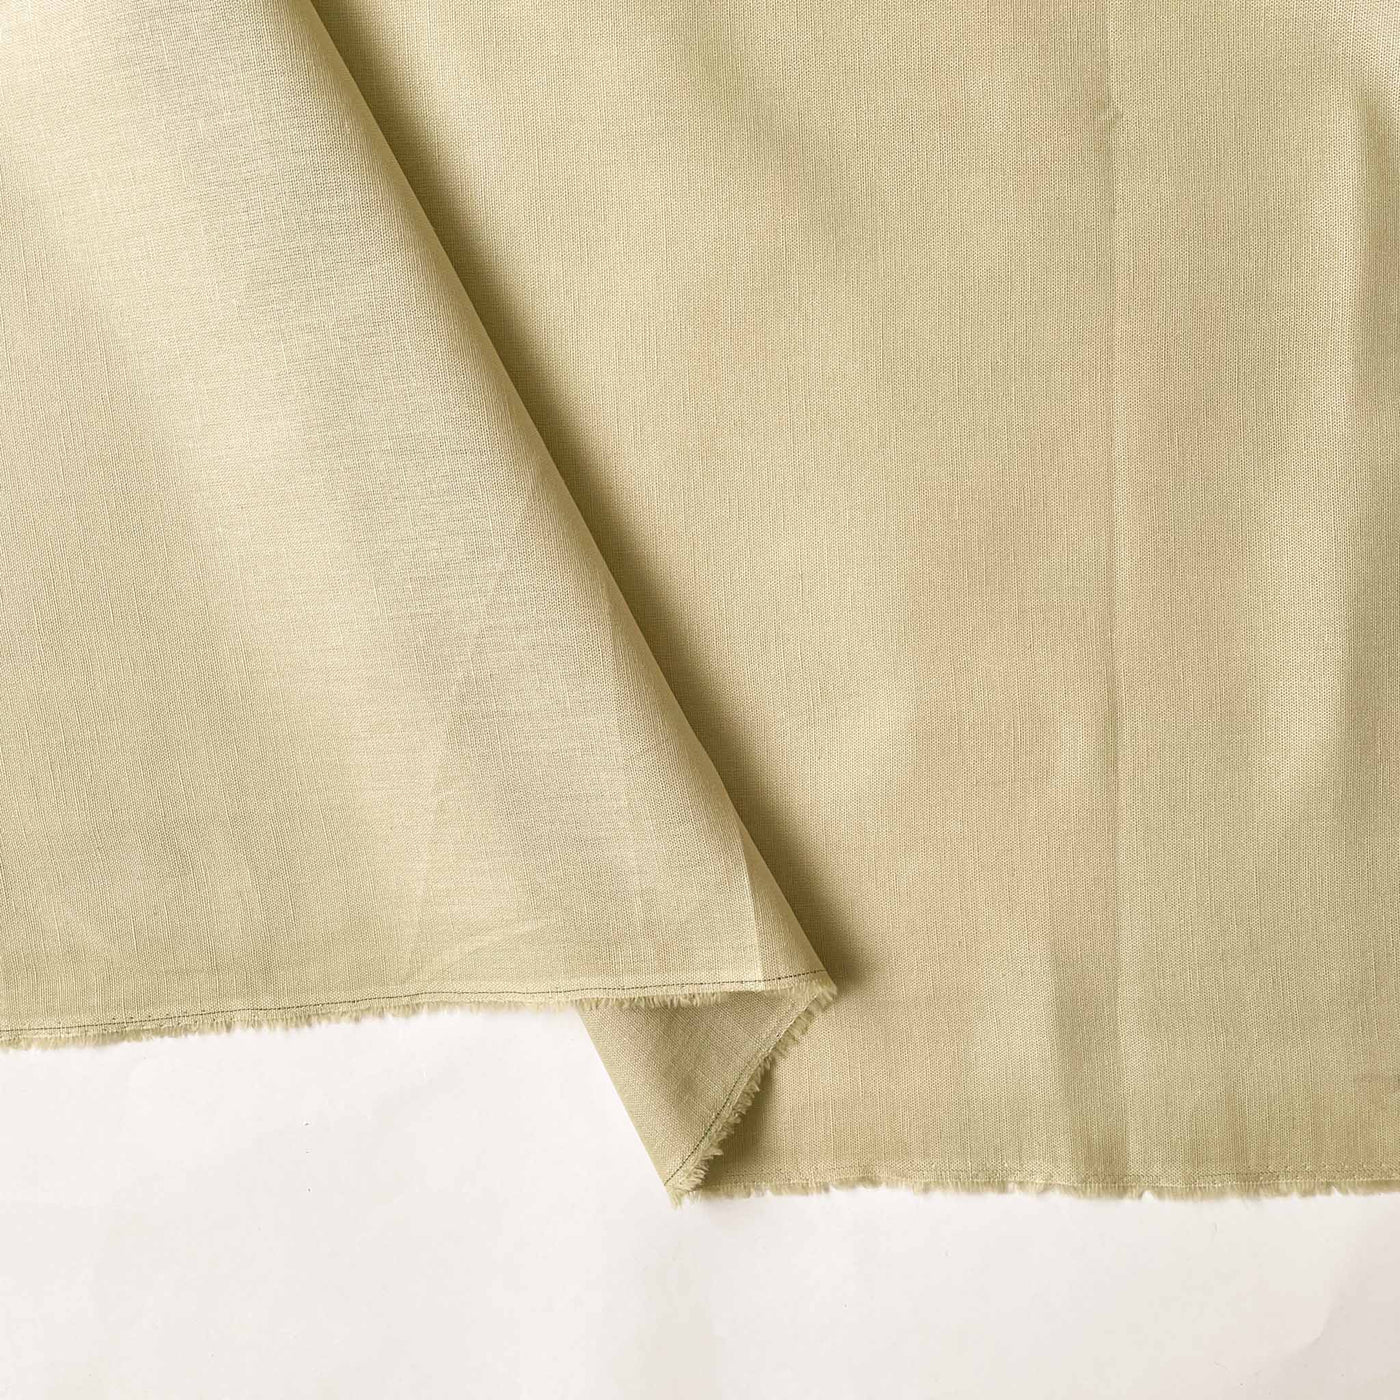 Cotton Linen Fabric Cut Piece (CUT PIECE) Khaki Color Pure Cotton Linen Fabric (Width 42 Inches)